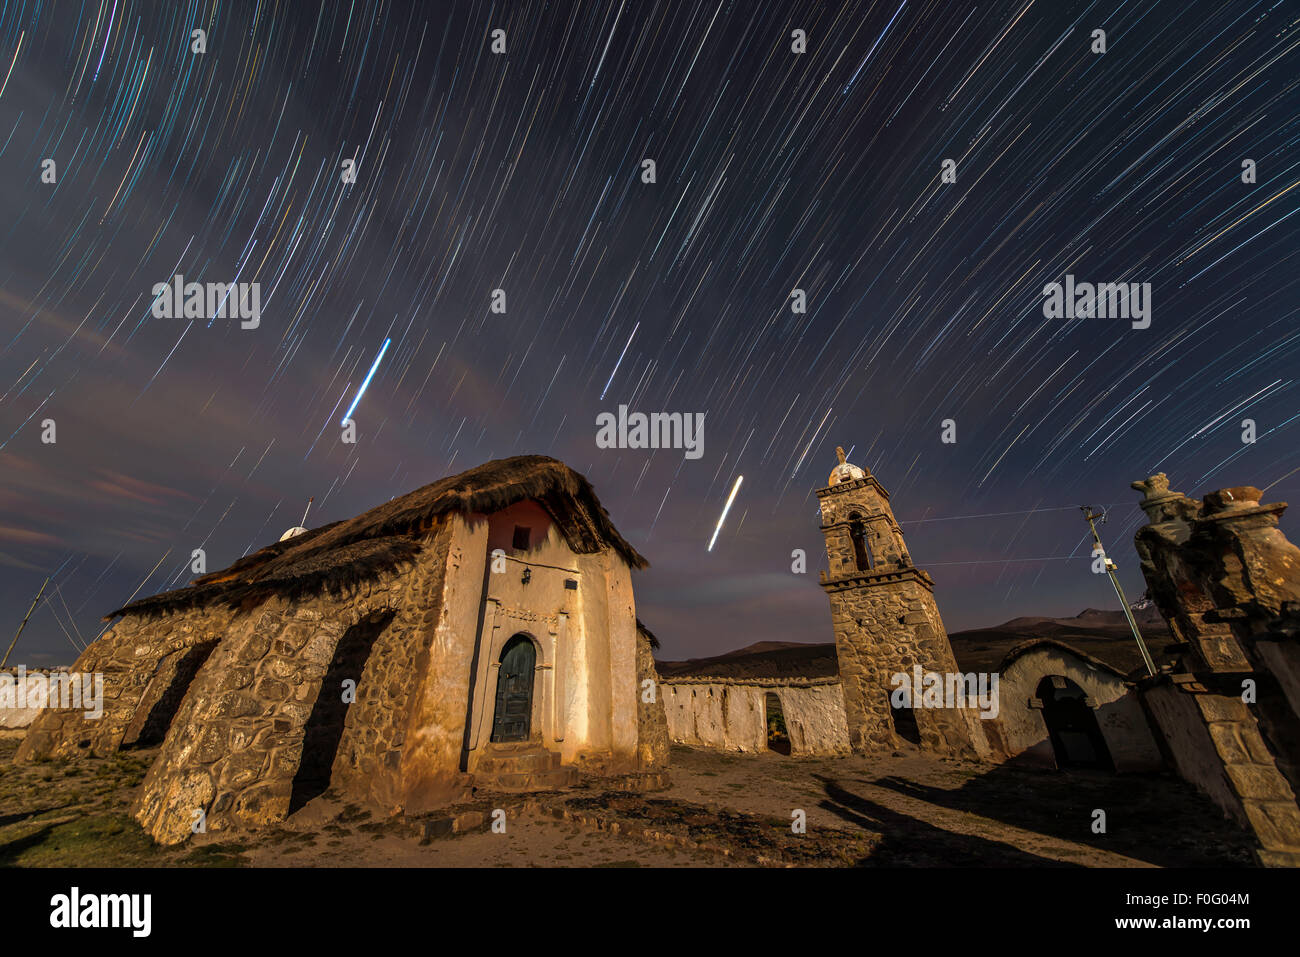 Église avec Star Trails in the sky Tomarapi village Parc National Sajama Bolivie Amérique du Sud Banque D'Images